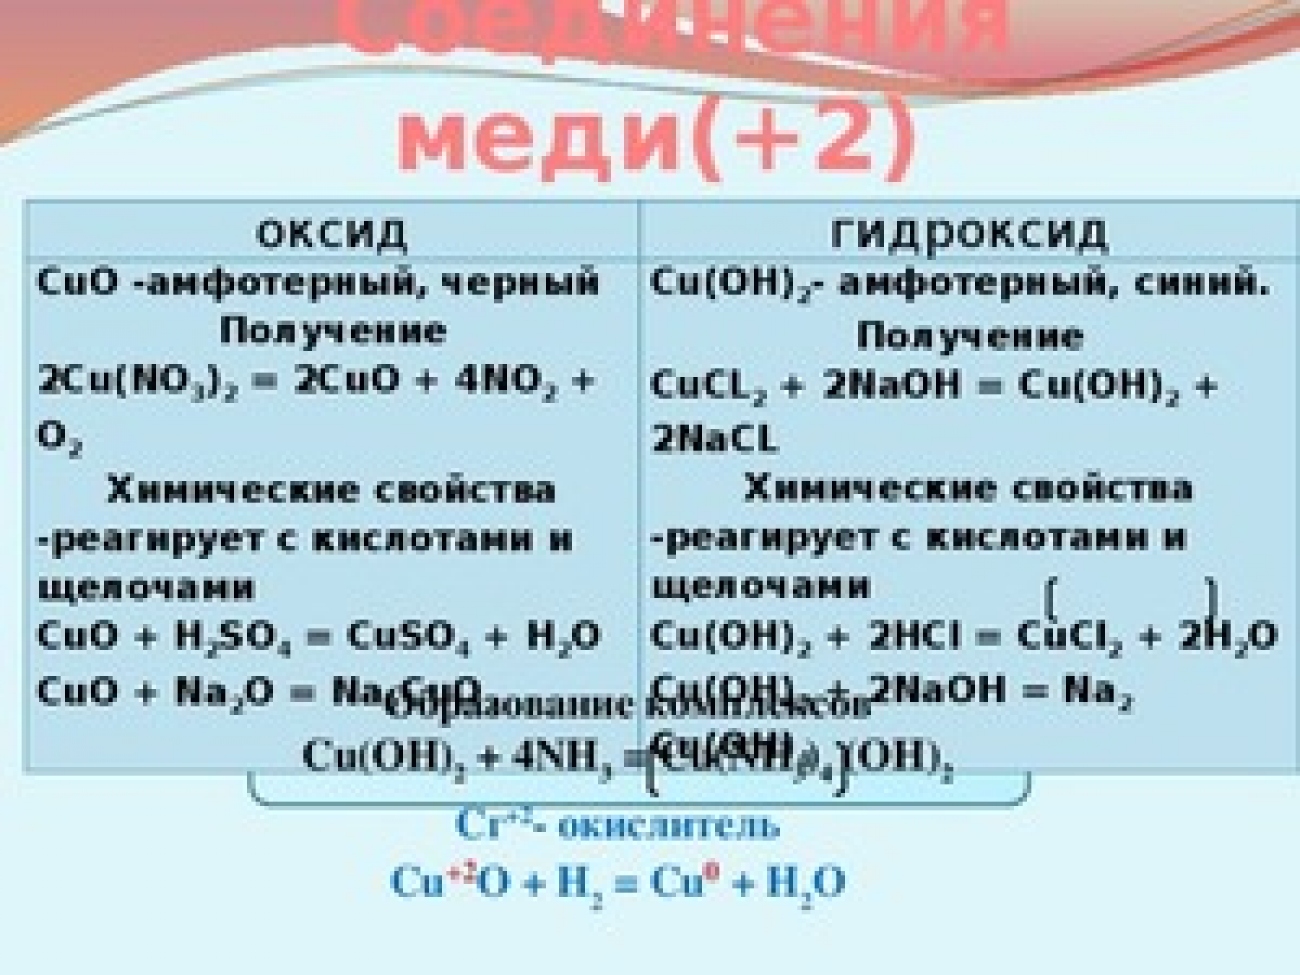 Cuo реагенты с которыми взаимодействует. Уравнения химической реакции оксида меди 2. Оксид меди 2 формула получения. Хим св оксида меди 2. Оксид меди 2 валентный формула.